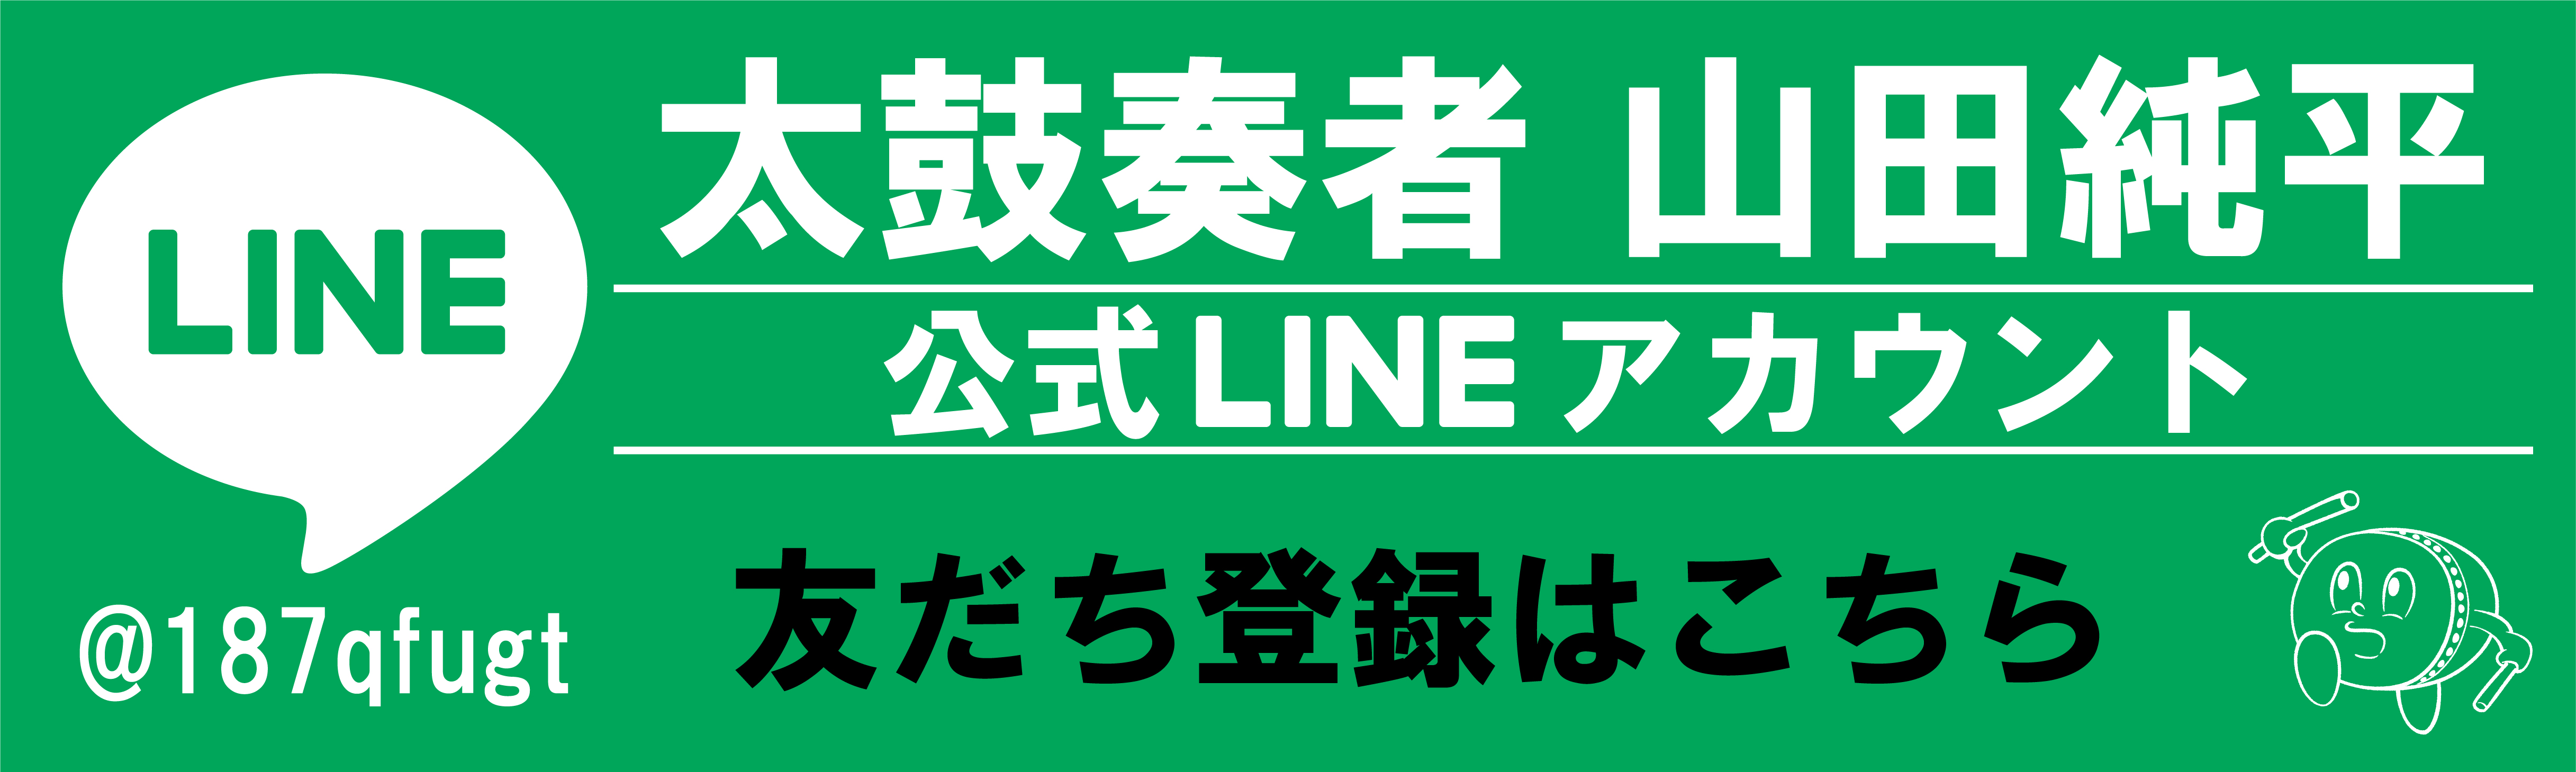 山田純平LINE公式アカウント